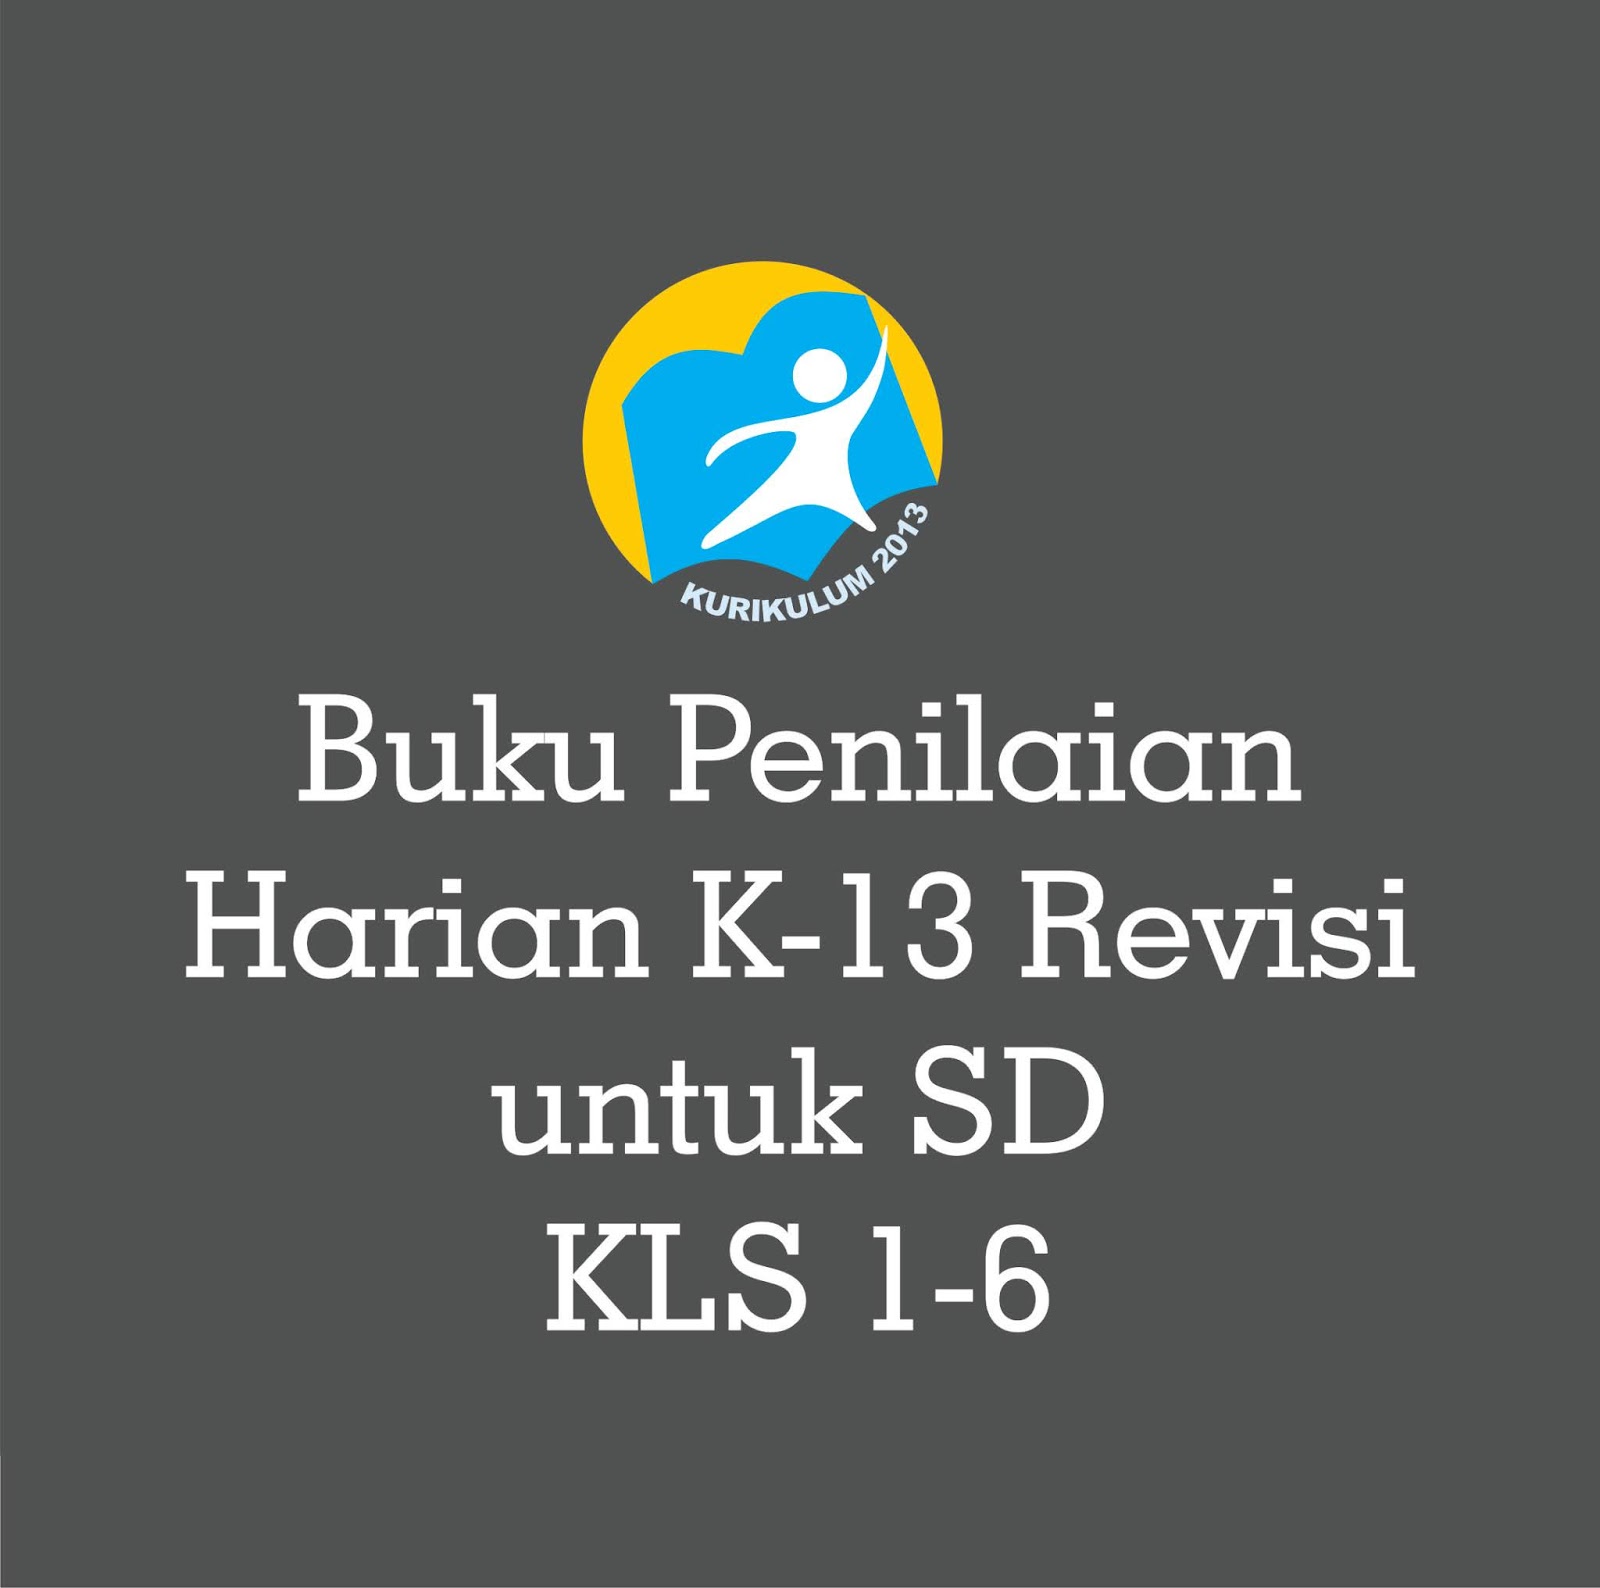 Download Buku Penilaian Harian SD Kurikulum 2013 Revisi 2018 